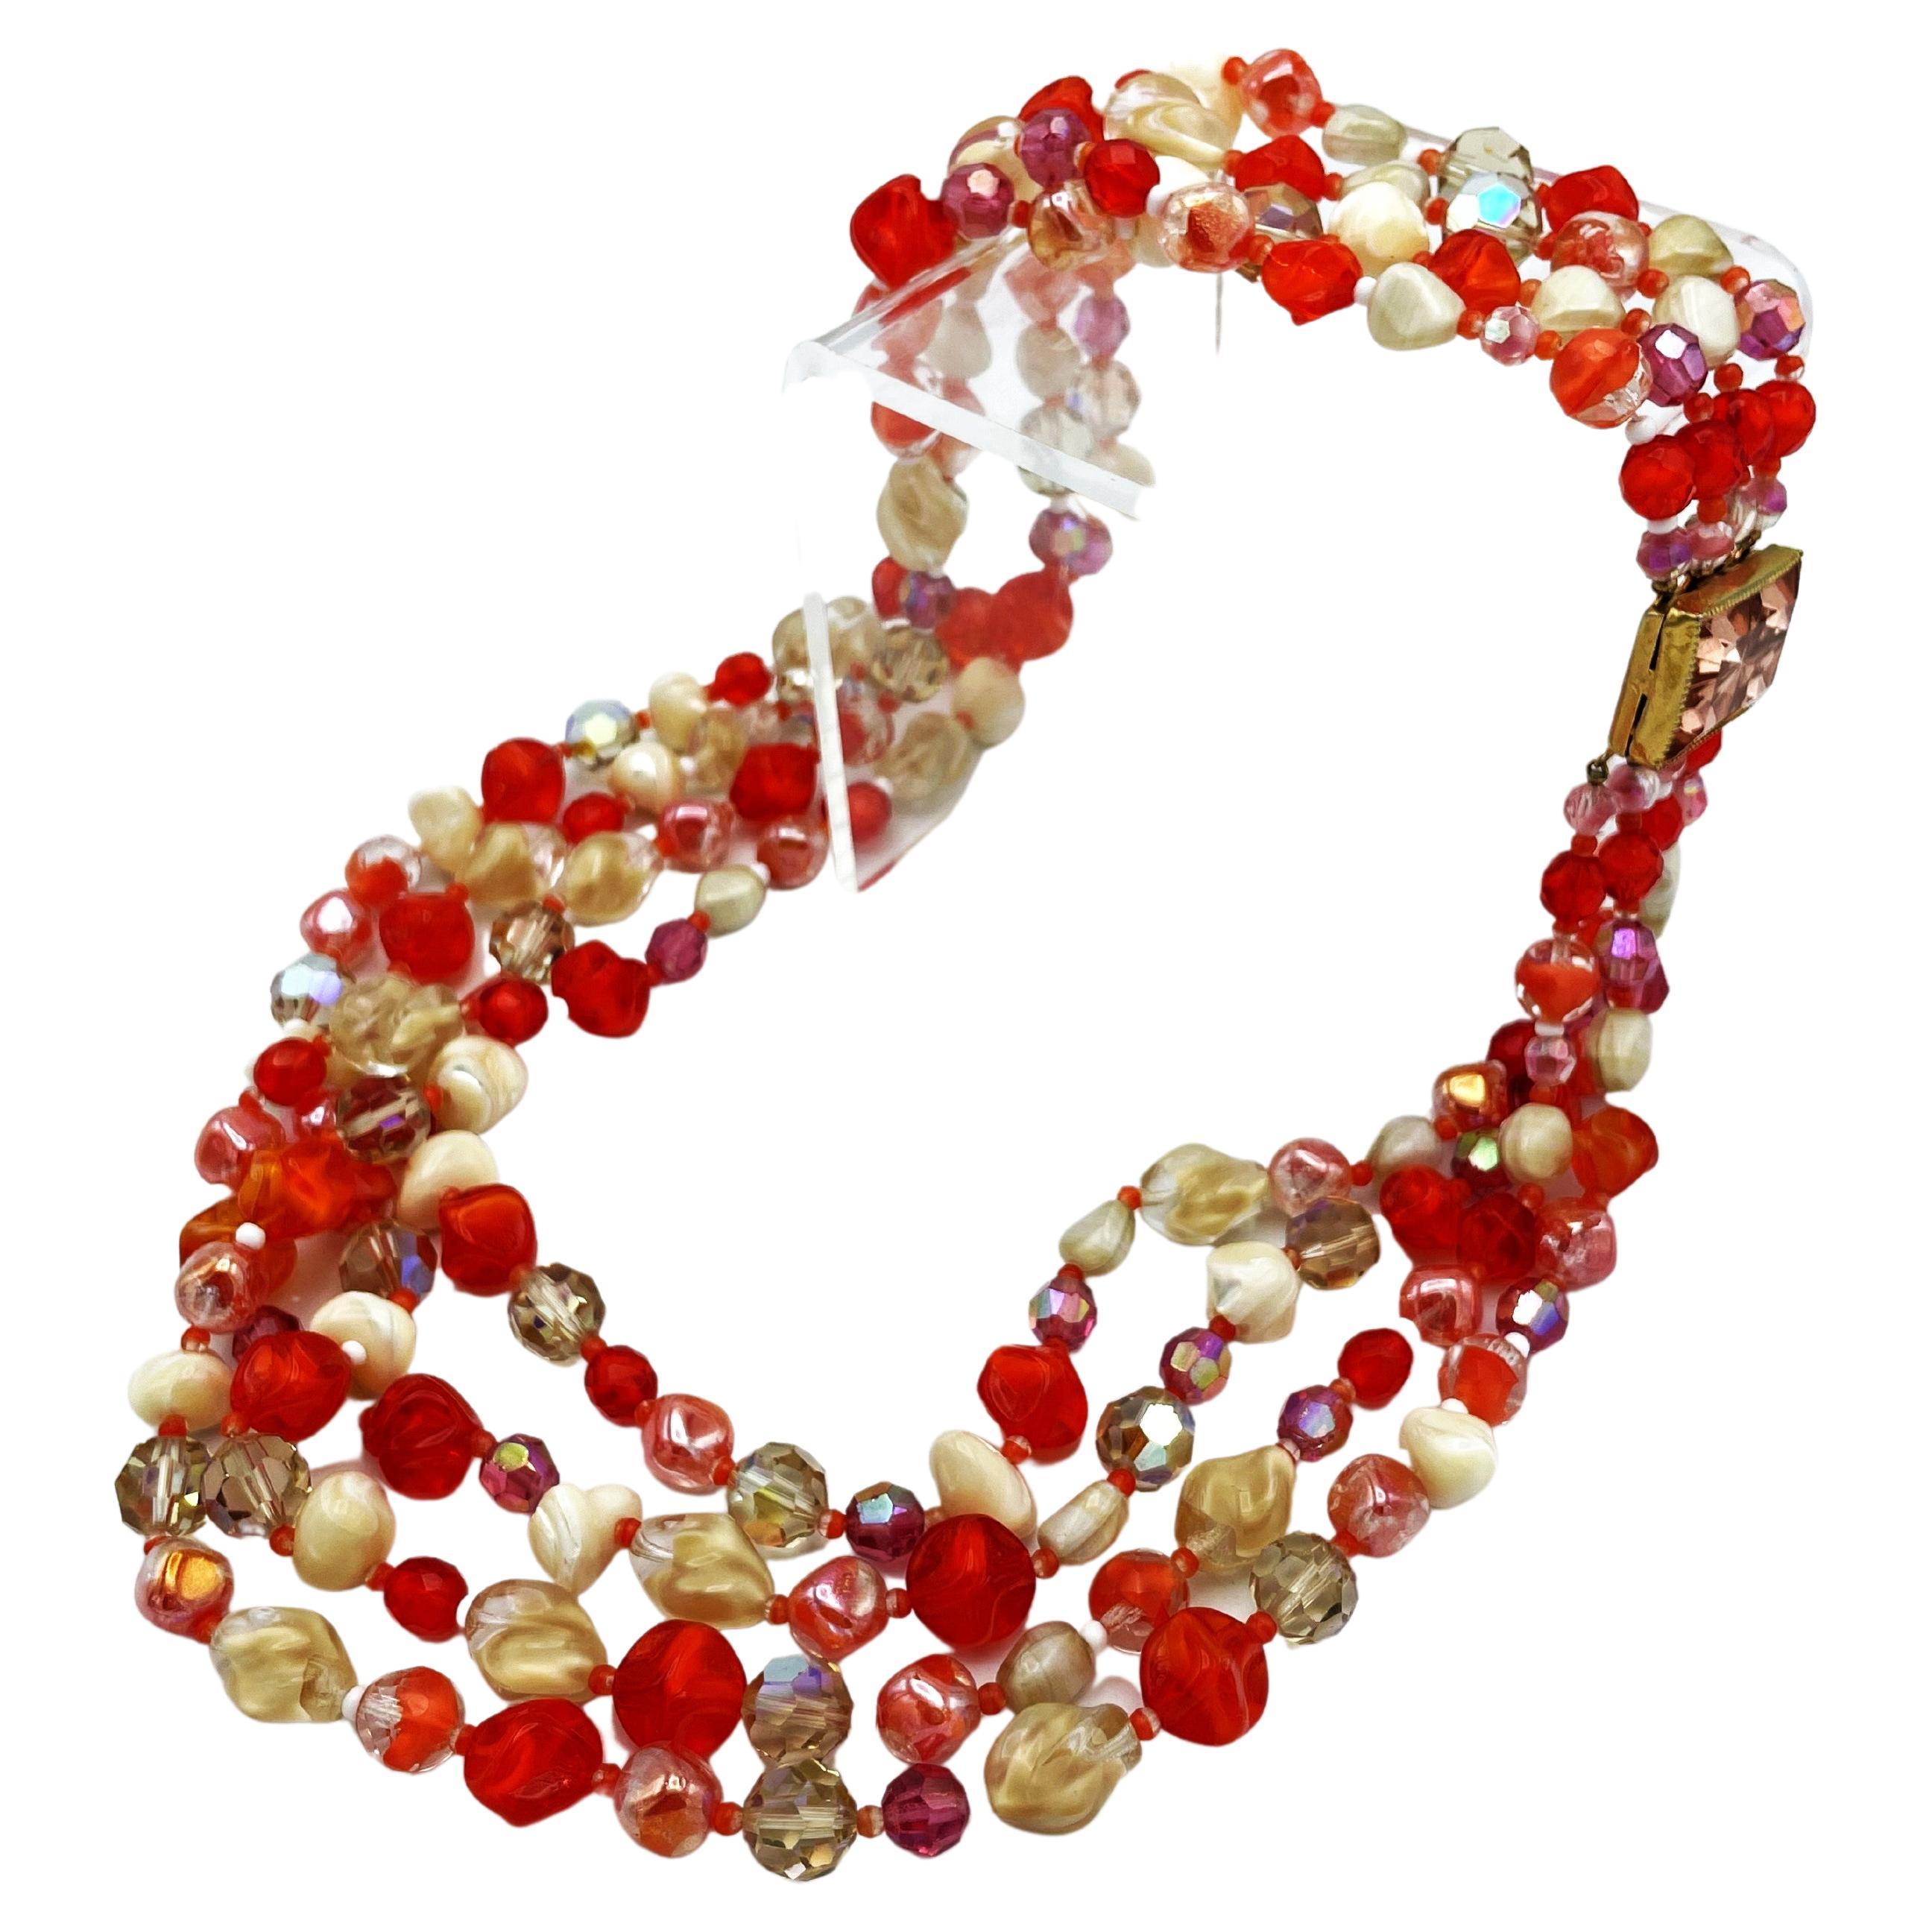 Sehr dekorative 4 reihige Kette mit verschiedenen Glasperlen in unterschiedlichem Beige und Rot  Töne Perlen und verschiedene Formen.  Schöner Verschluss in Rosa.
Hattie Carnegie, geboren als Henrietta Kanengeiser, war eine